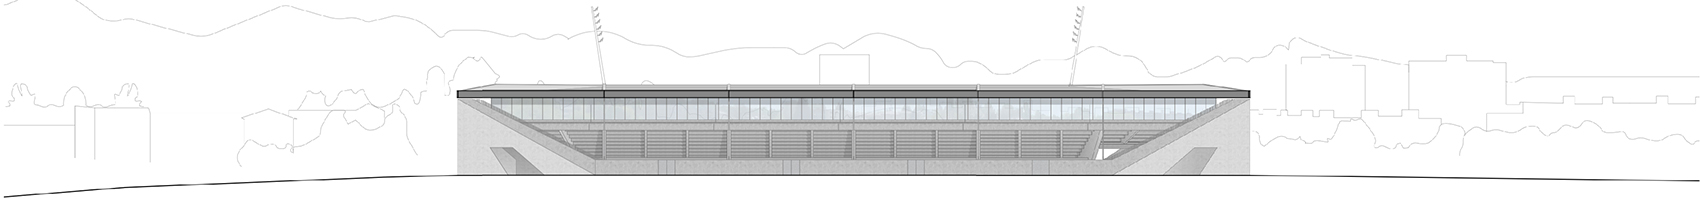 洛桑市新足球场馆，瑞士/散发宁静感的市郊体育设施-58